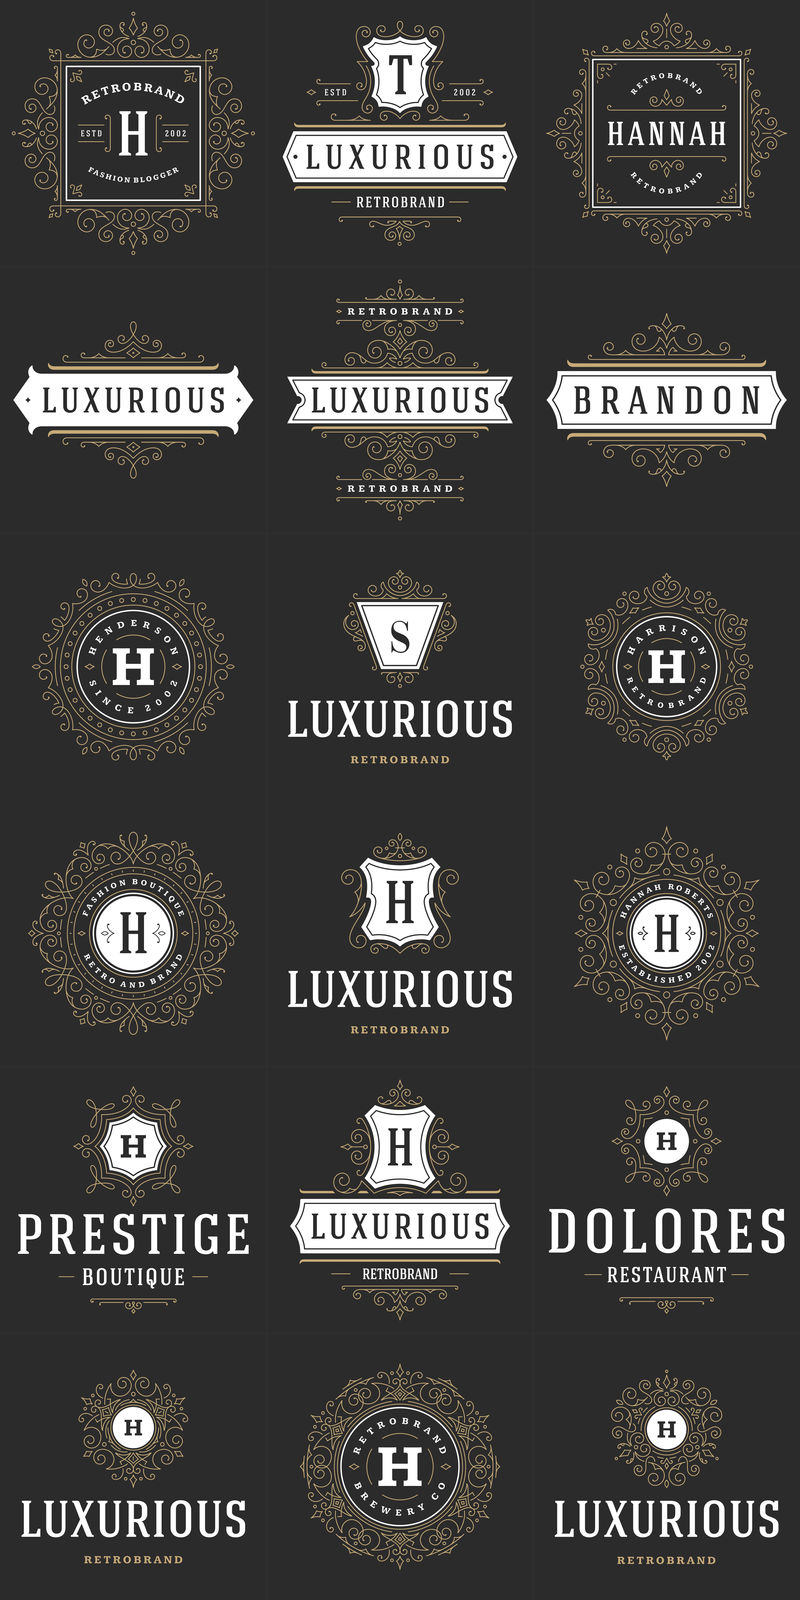 餐厅标识设计模板集矢量插图-适合餐厅菜单和咖啡馆徽章-复古的排版元素和轮廓